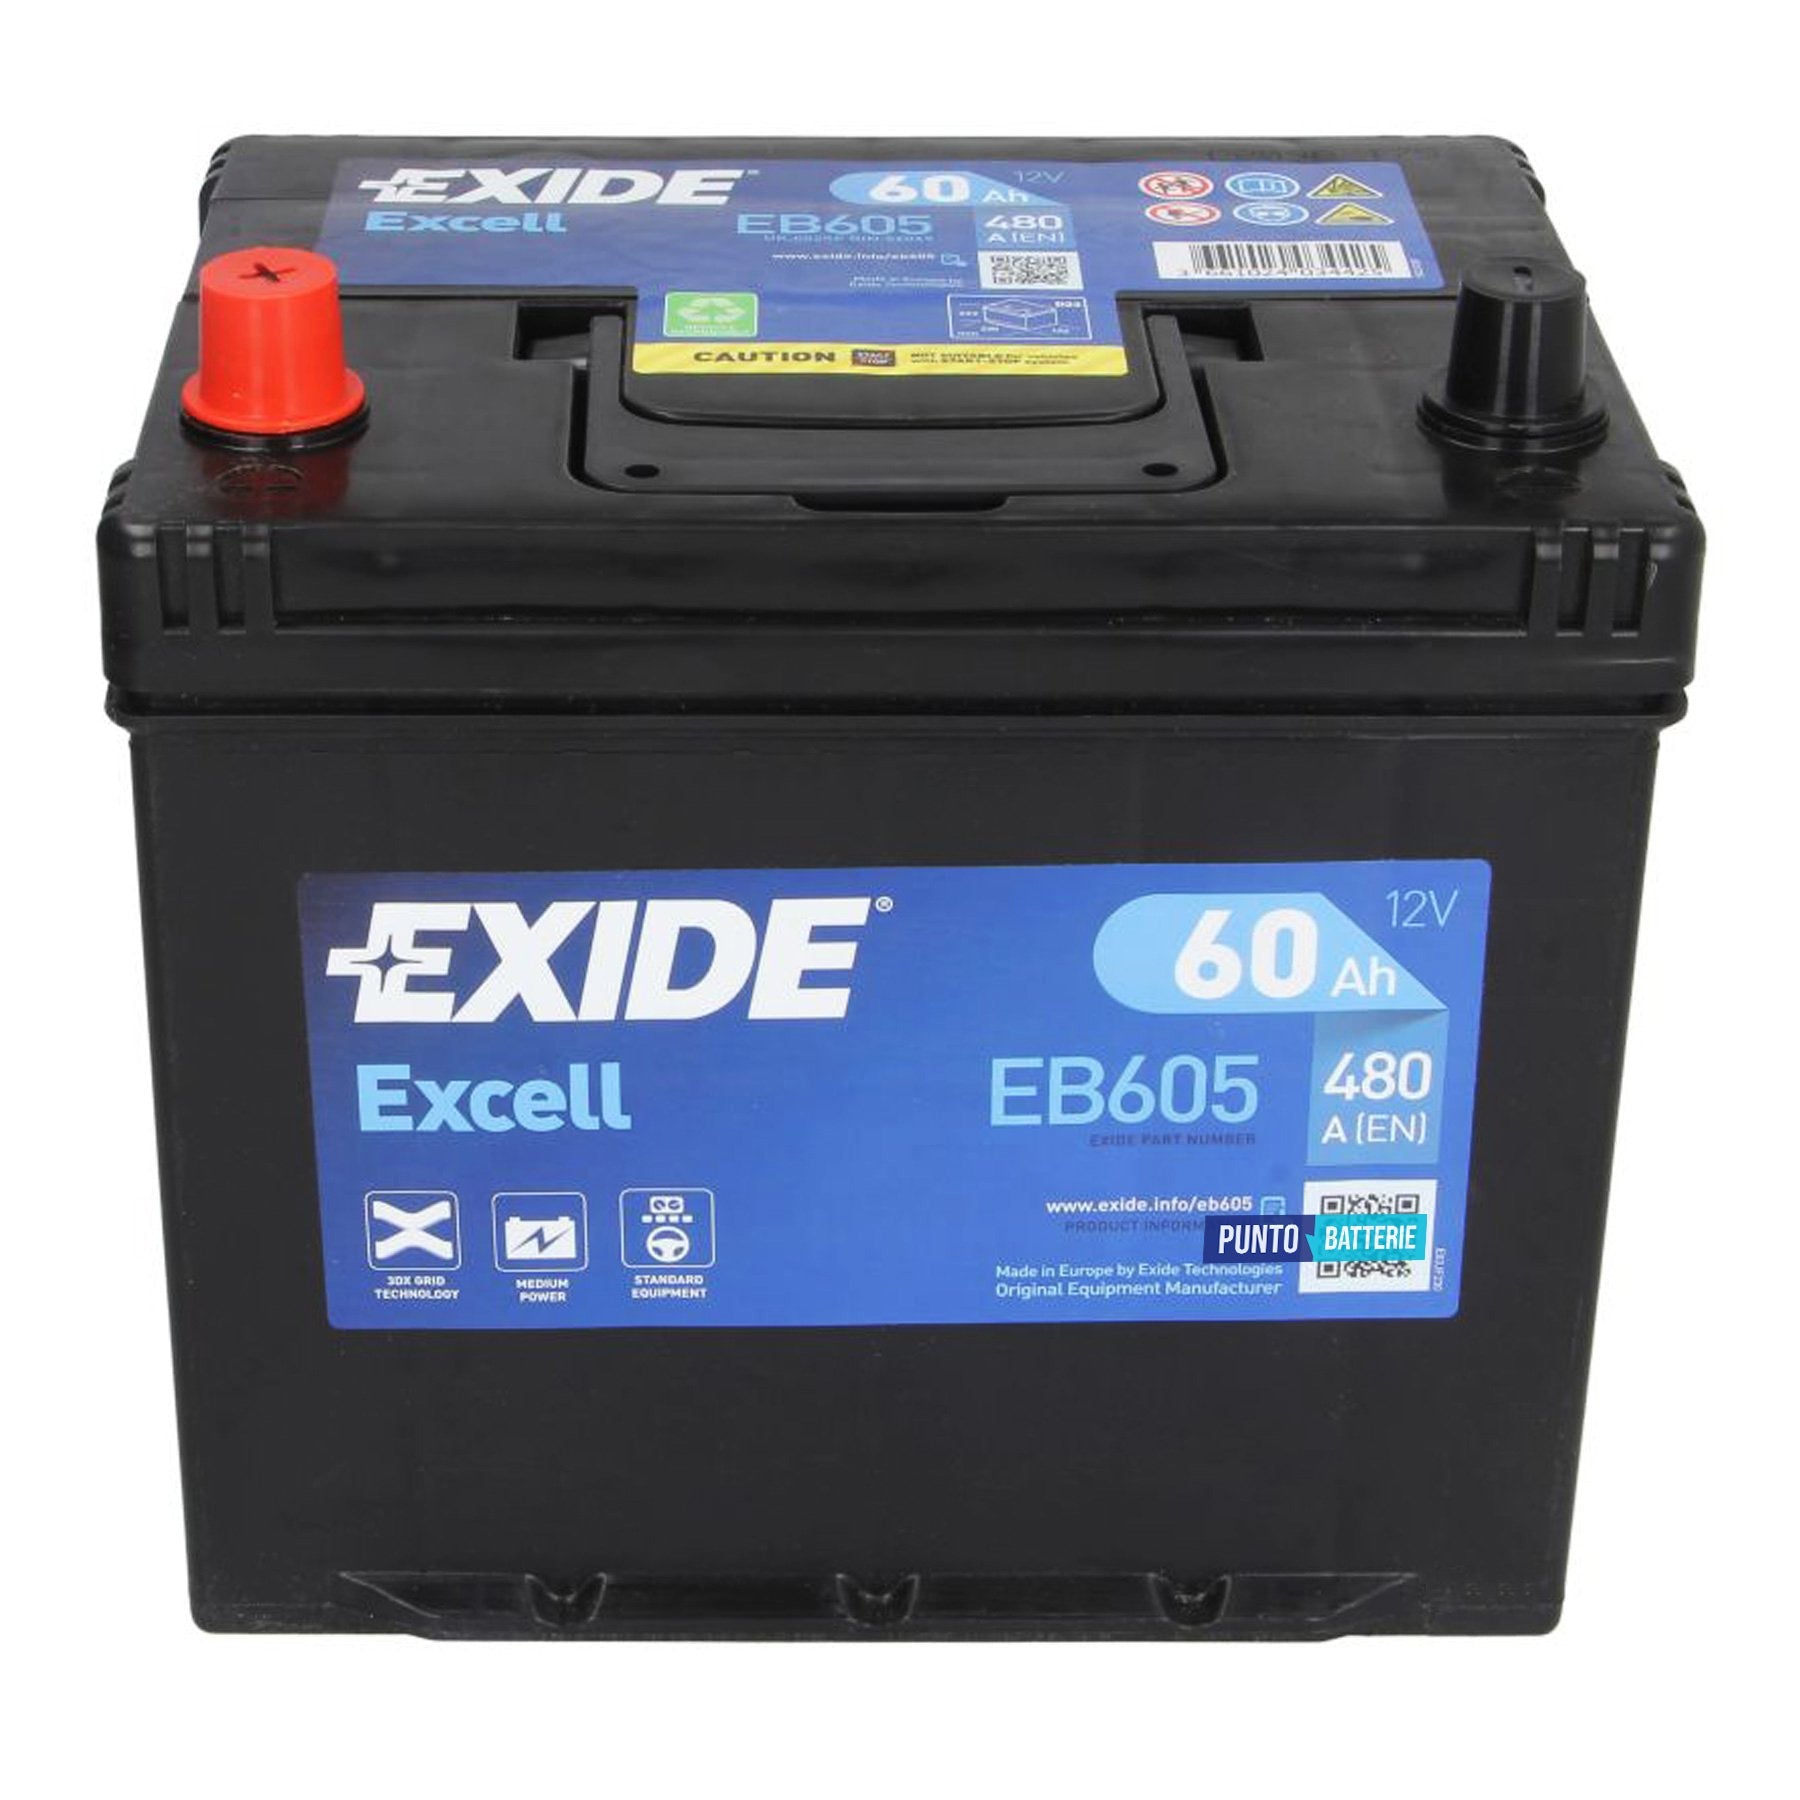 Batteria Exide 60Ah, 12V, 480A, 230x173x222mm